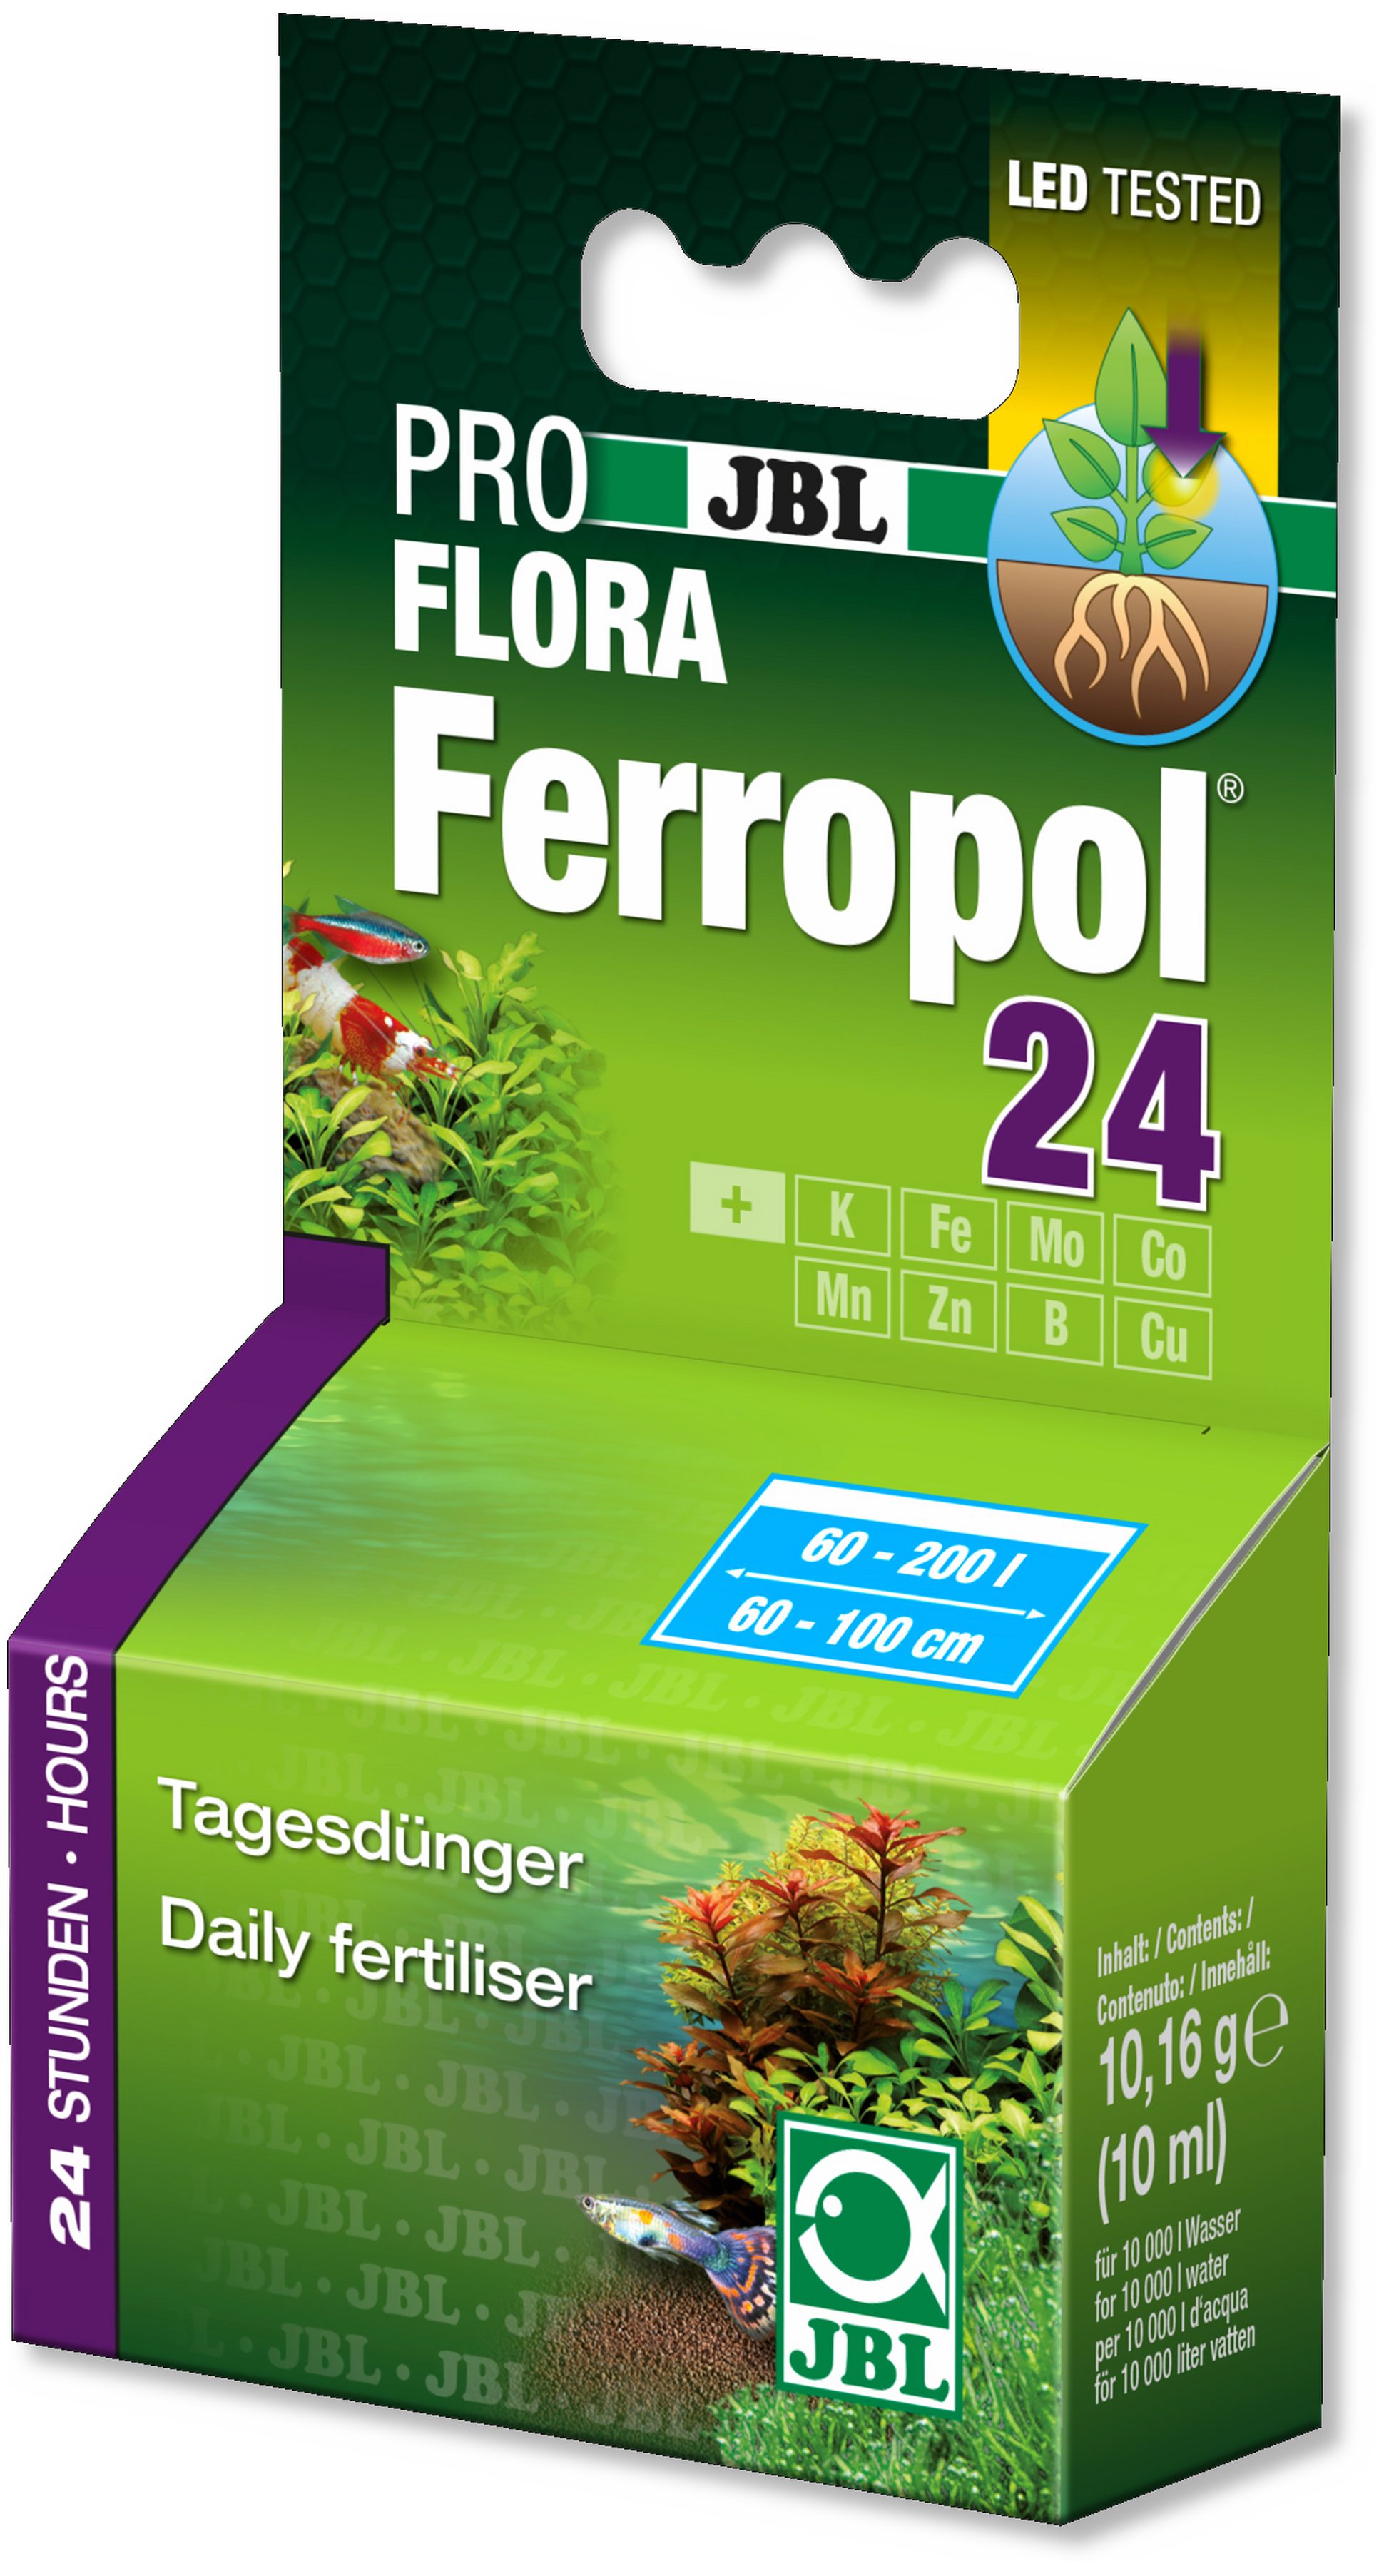 JBL GmbH & Co. KG Aquariendeko Pflanzendünger JBL Ferropol 24, 10 ml